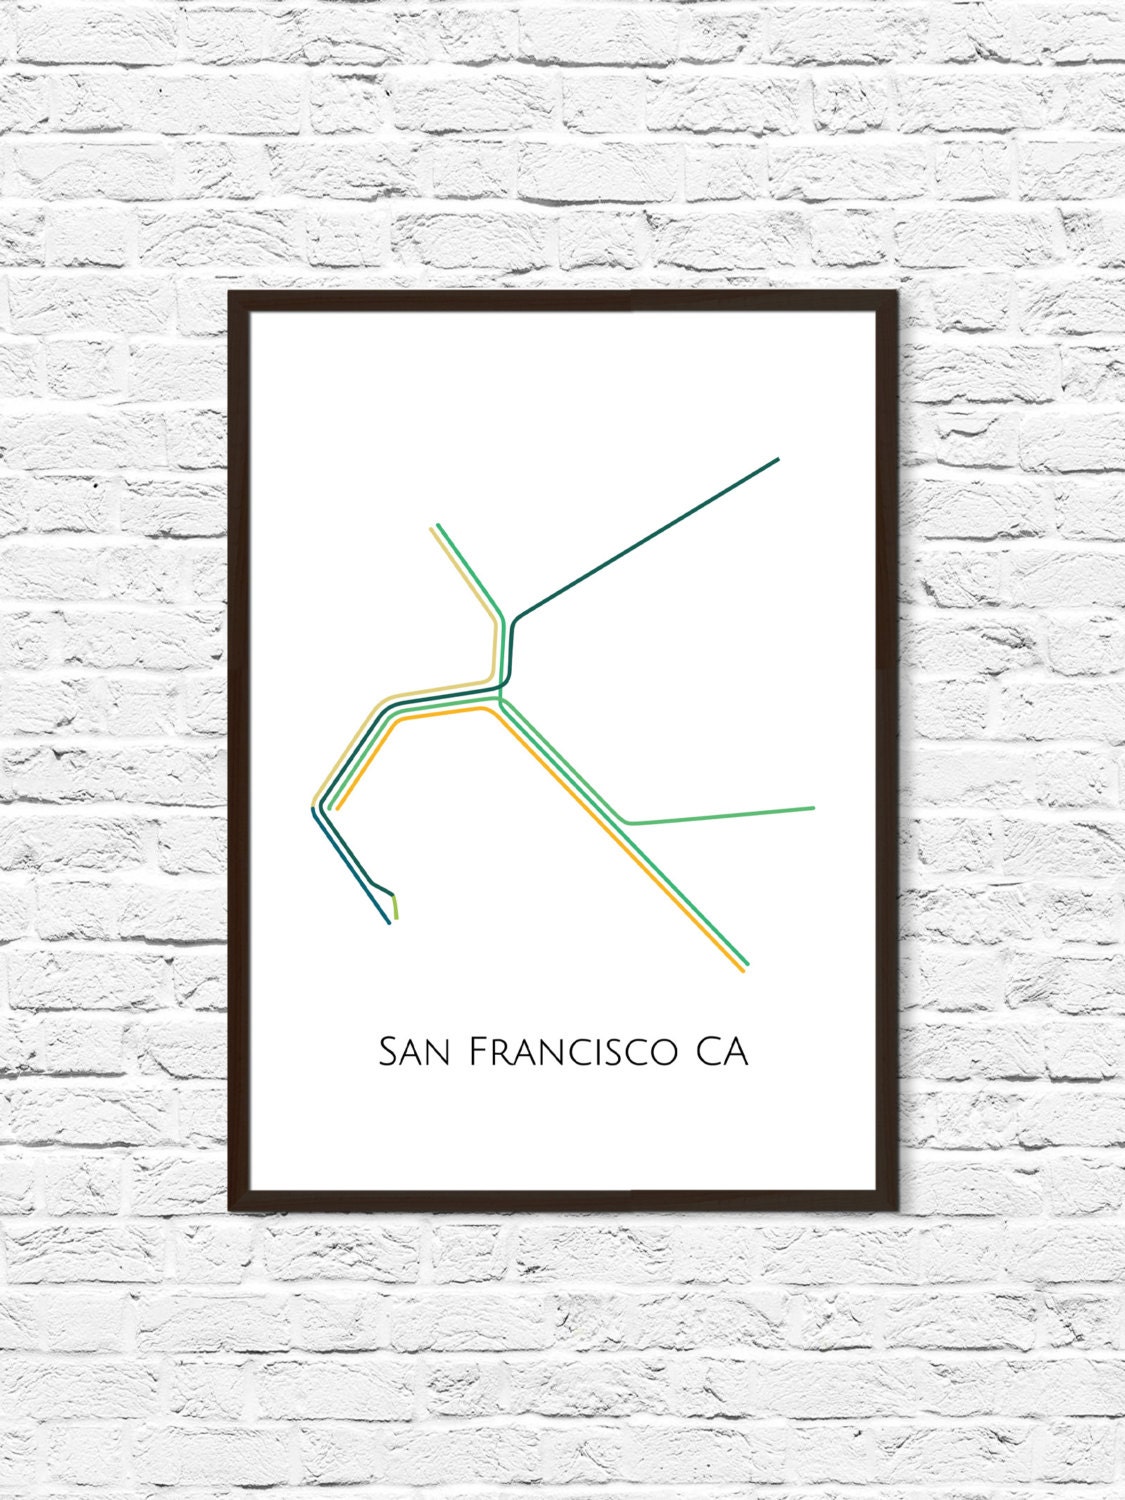 San Francisco Metro Map Bay Area Transit Map Subway